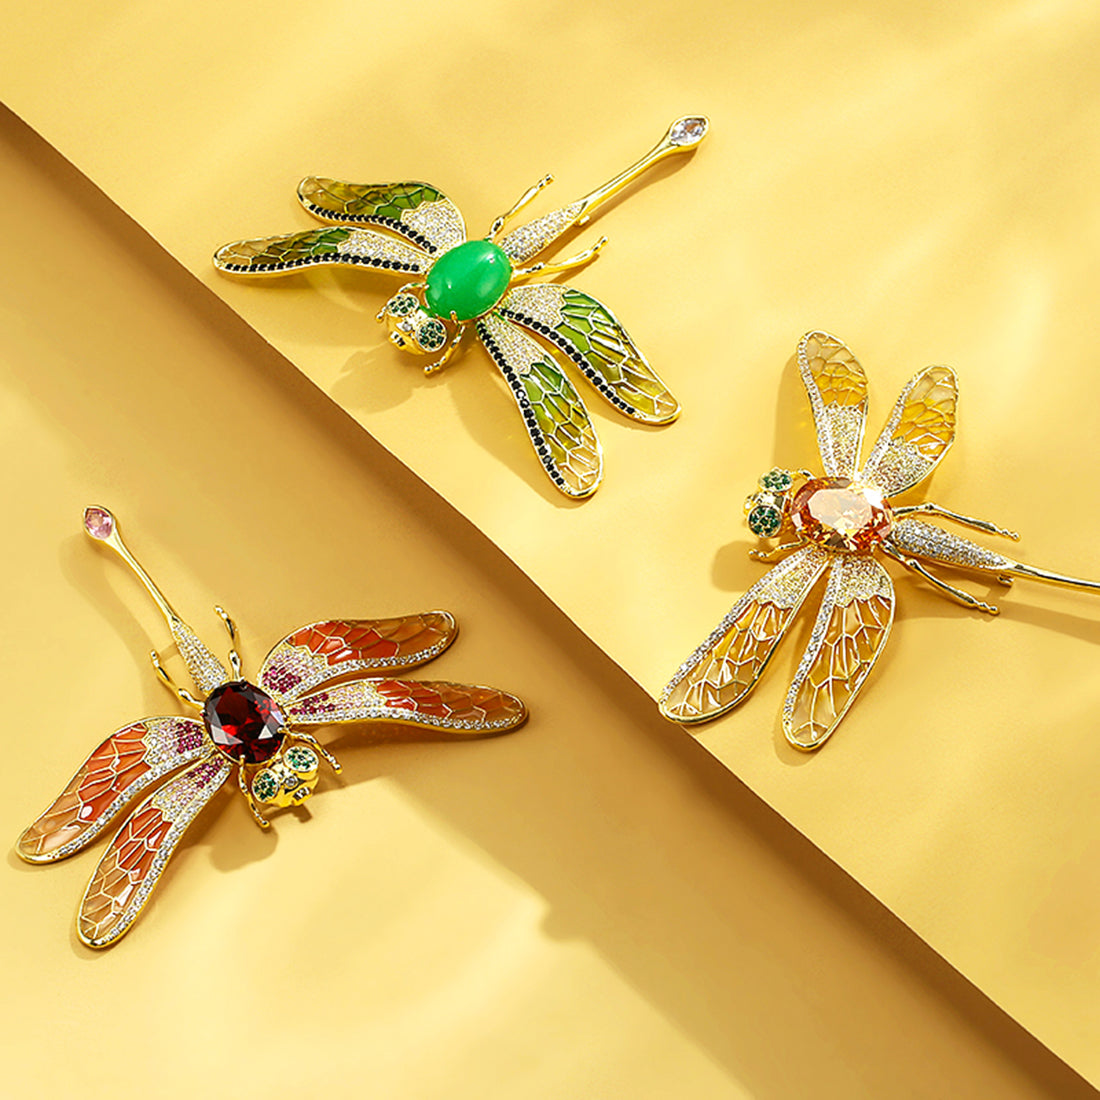 Vintage Gold Plating Spider Dragonfly Brooch